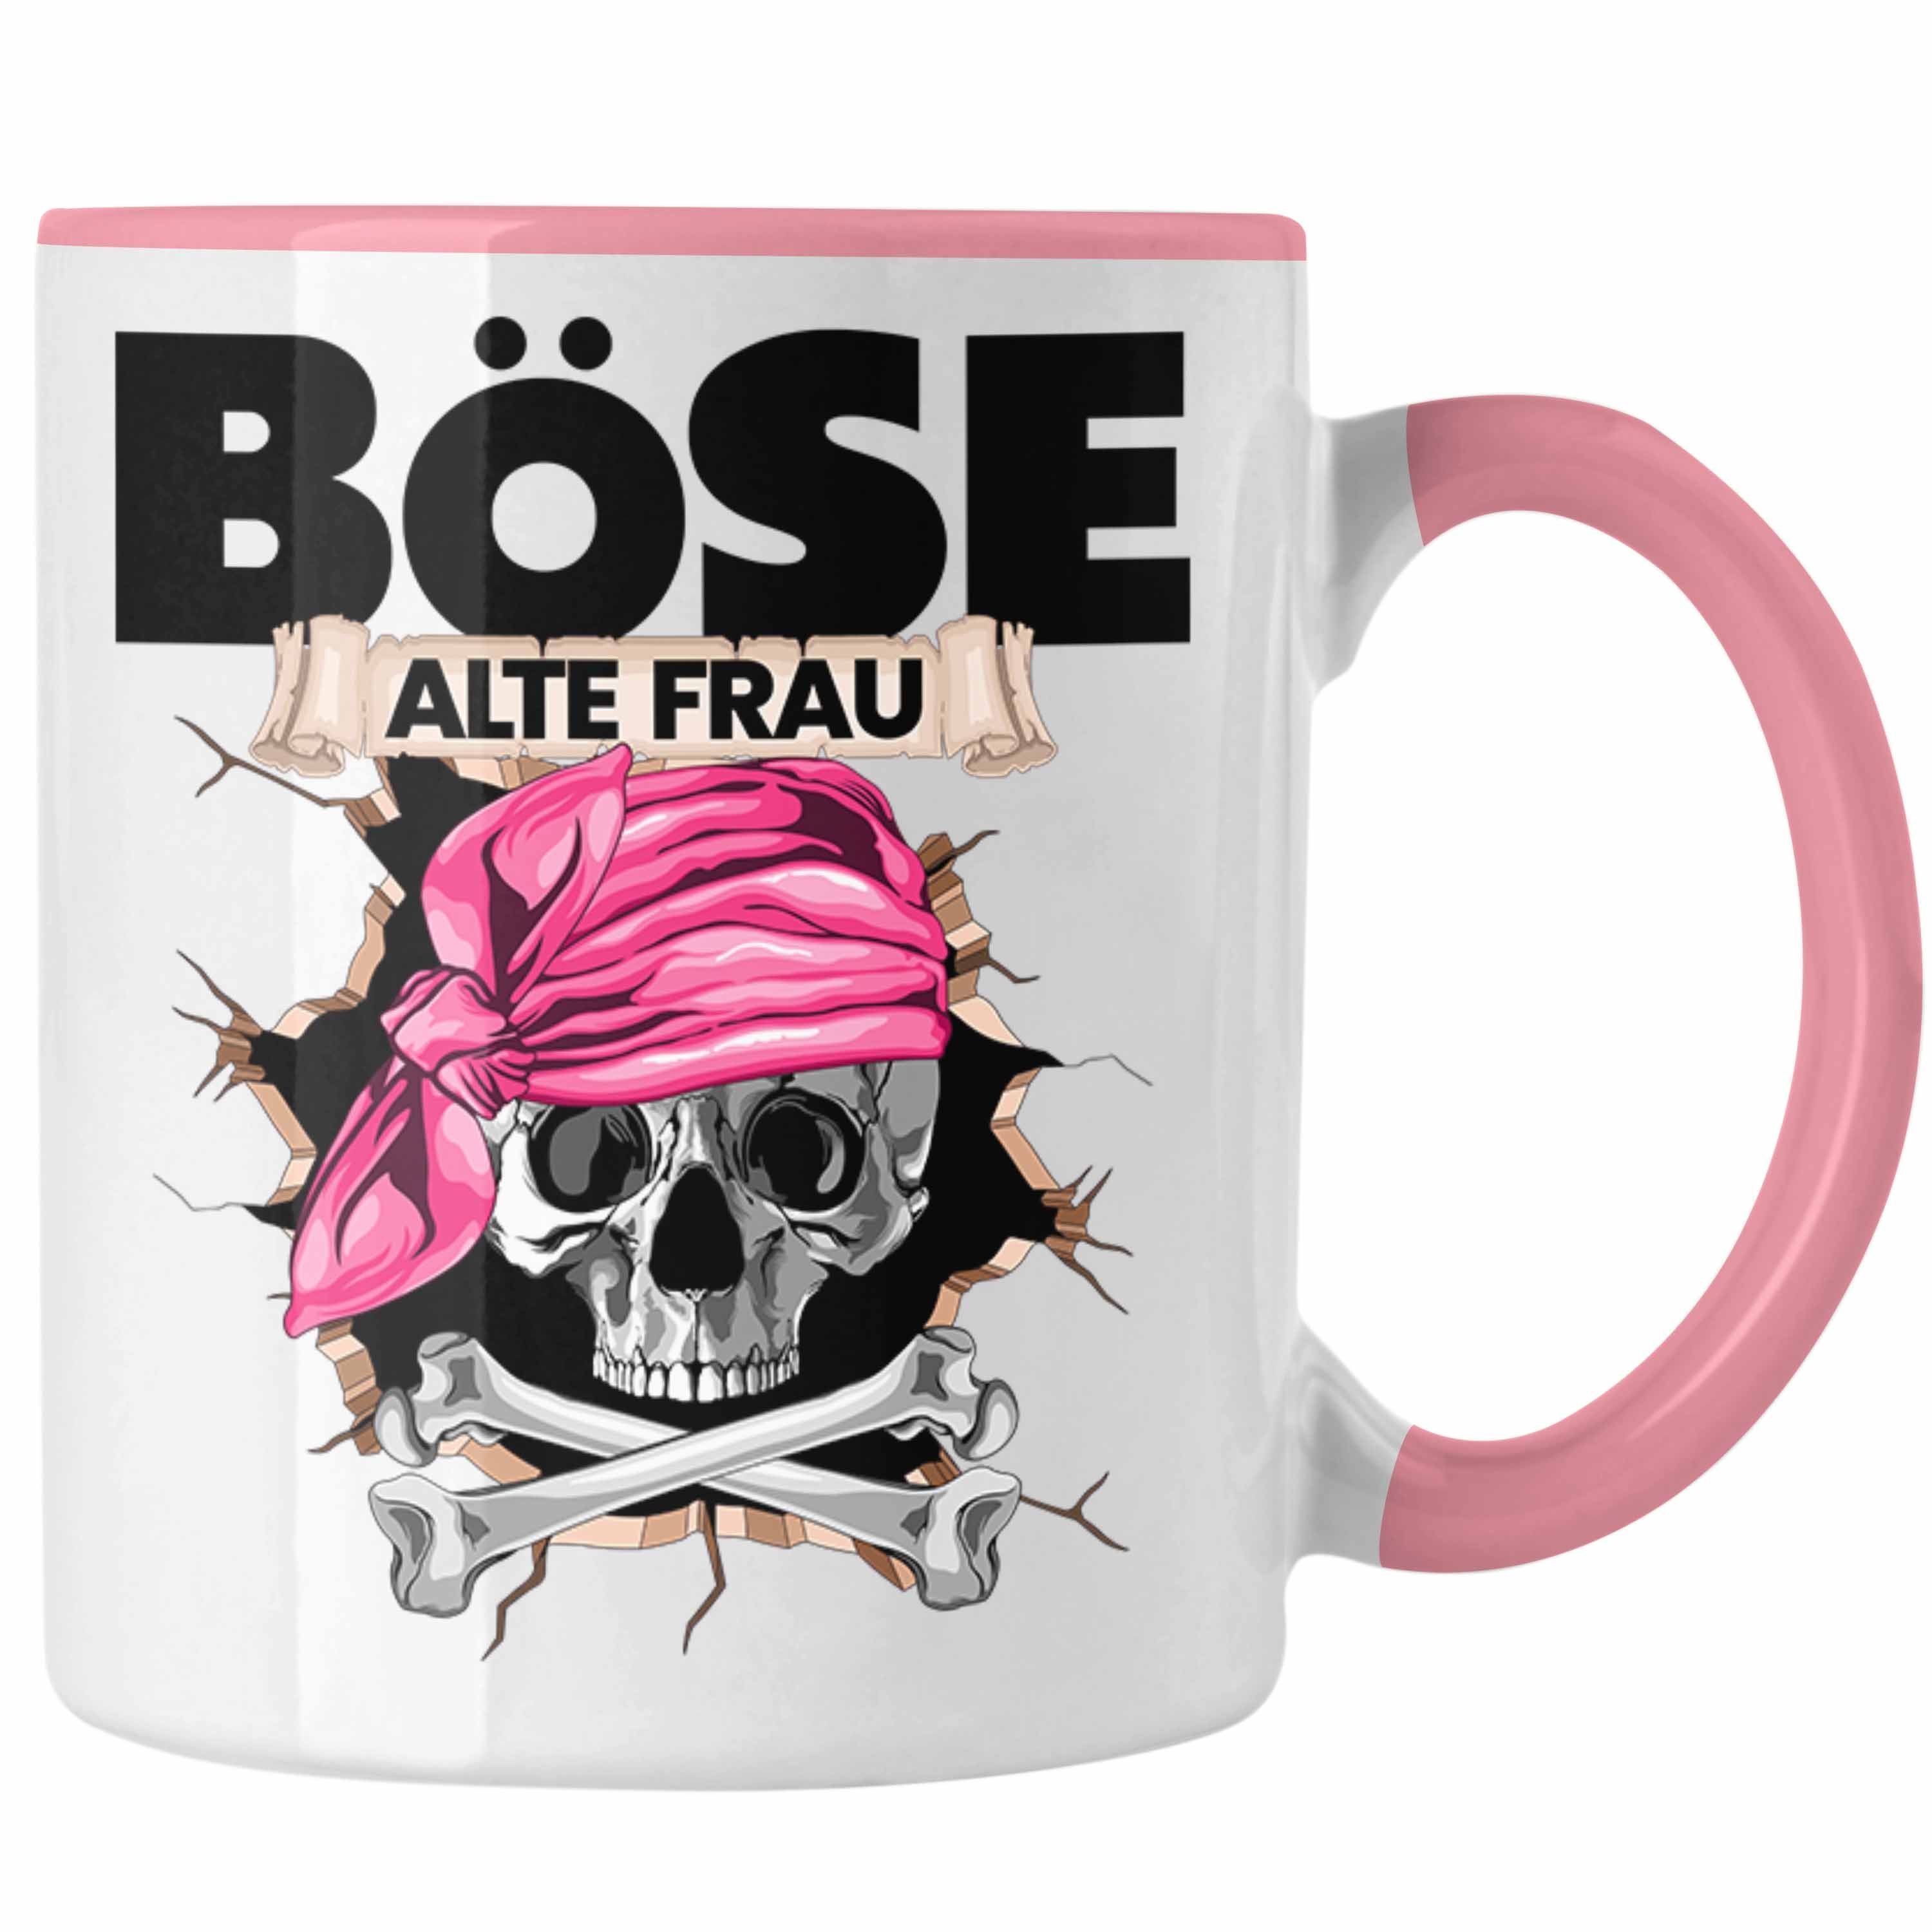 Frauen Alte Tasse Kaffee-B Böse Rosa Geschenk Piratin Geschenkidee für Trendation Frau Tasse